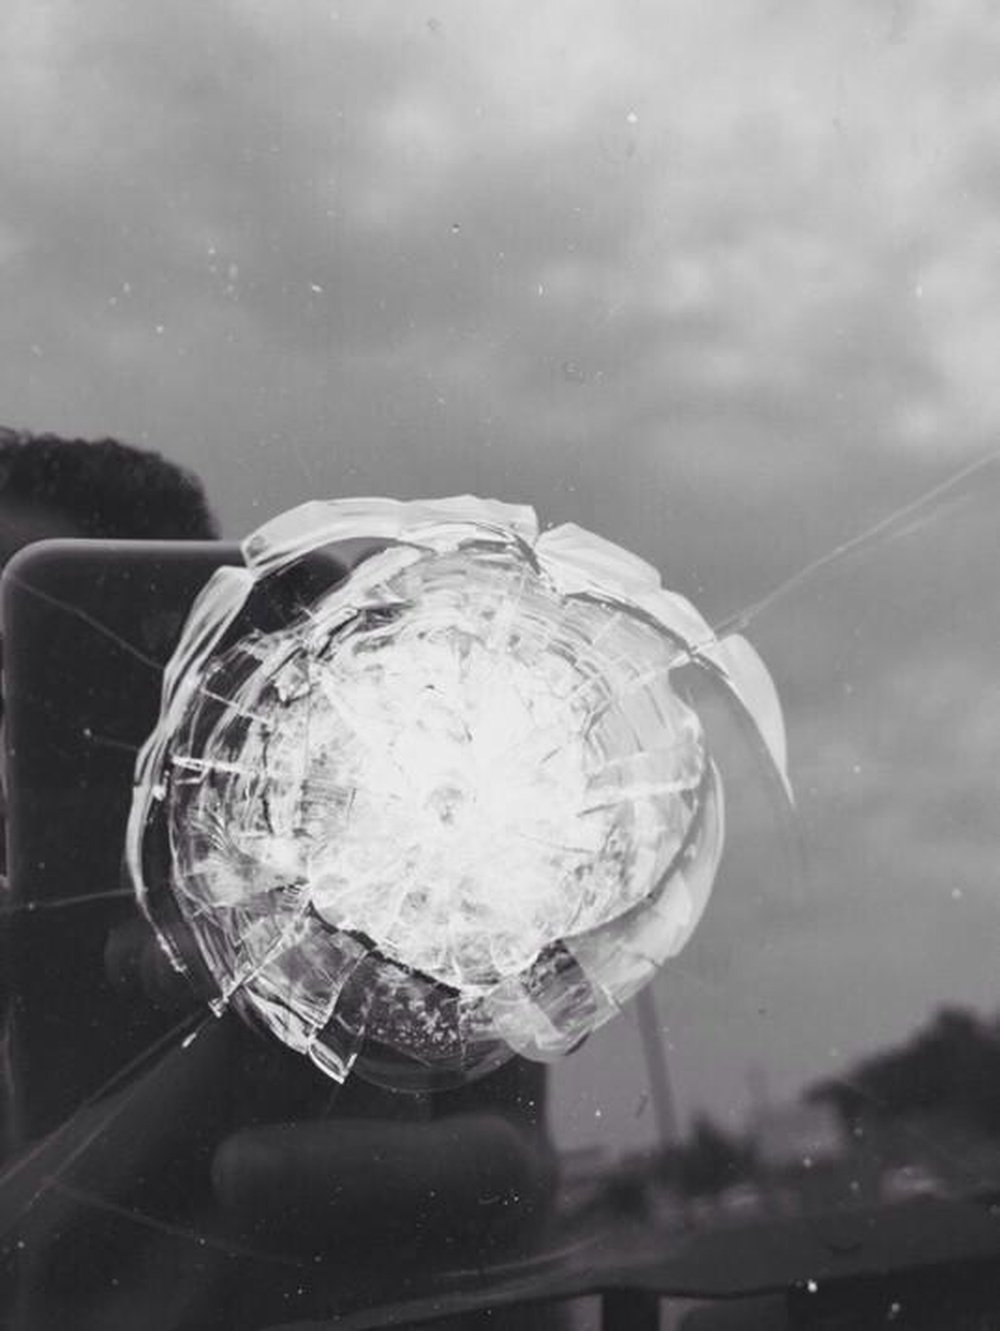 Uno de los impactos de bala en el cristal del vehículo de Topal.